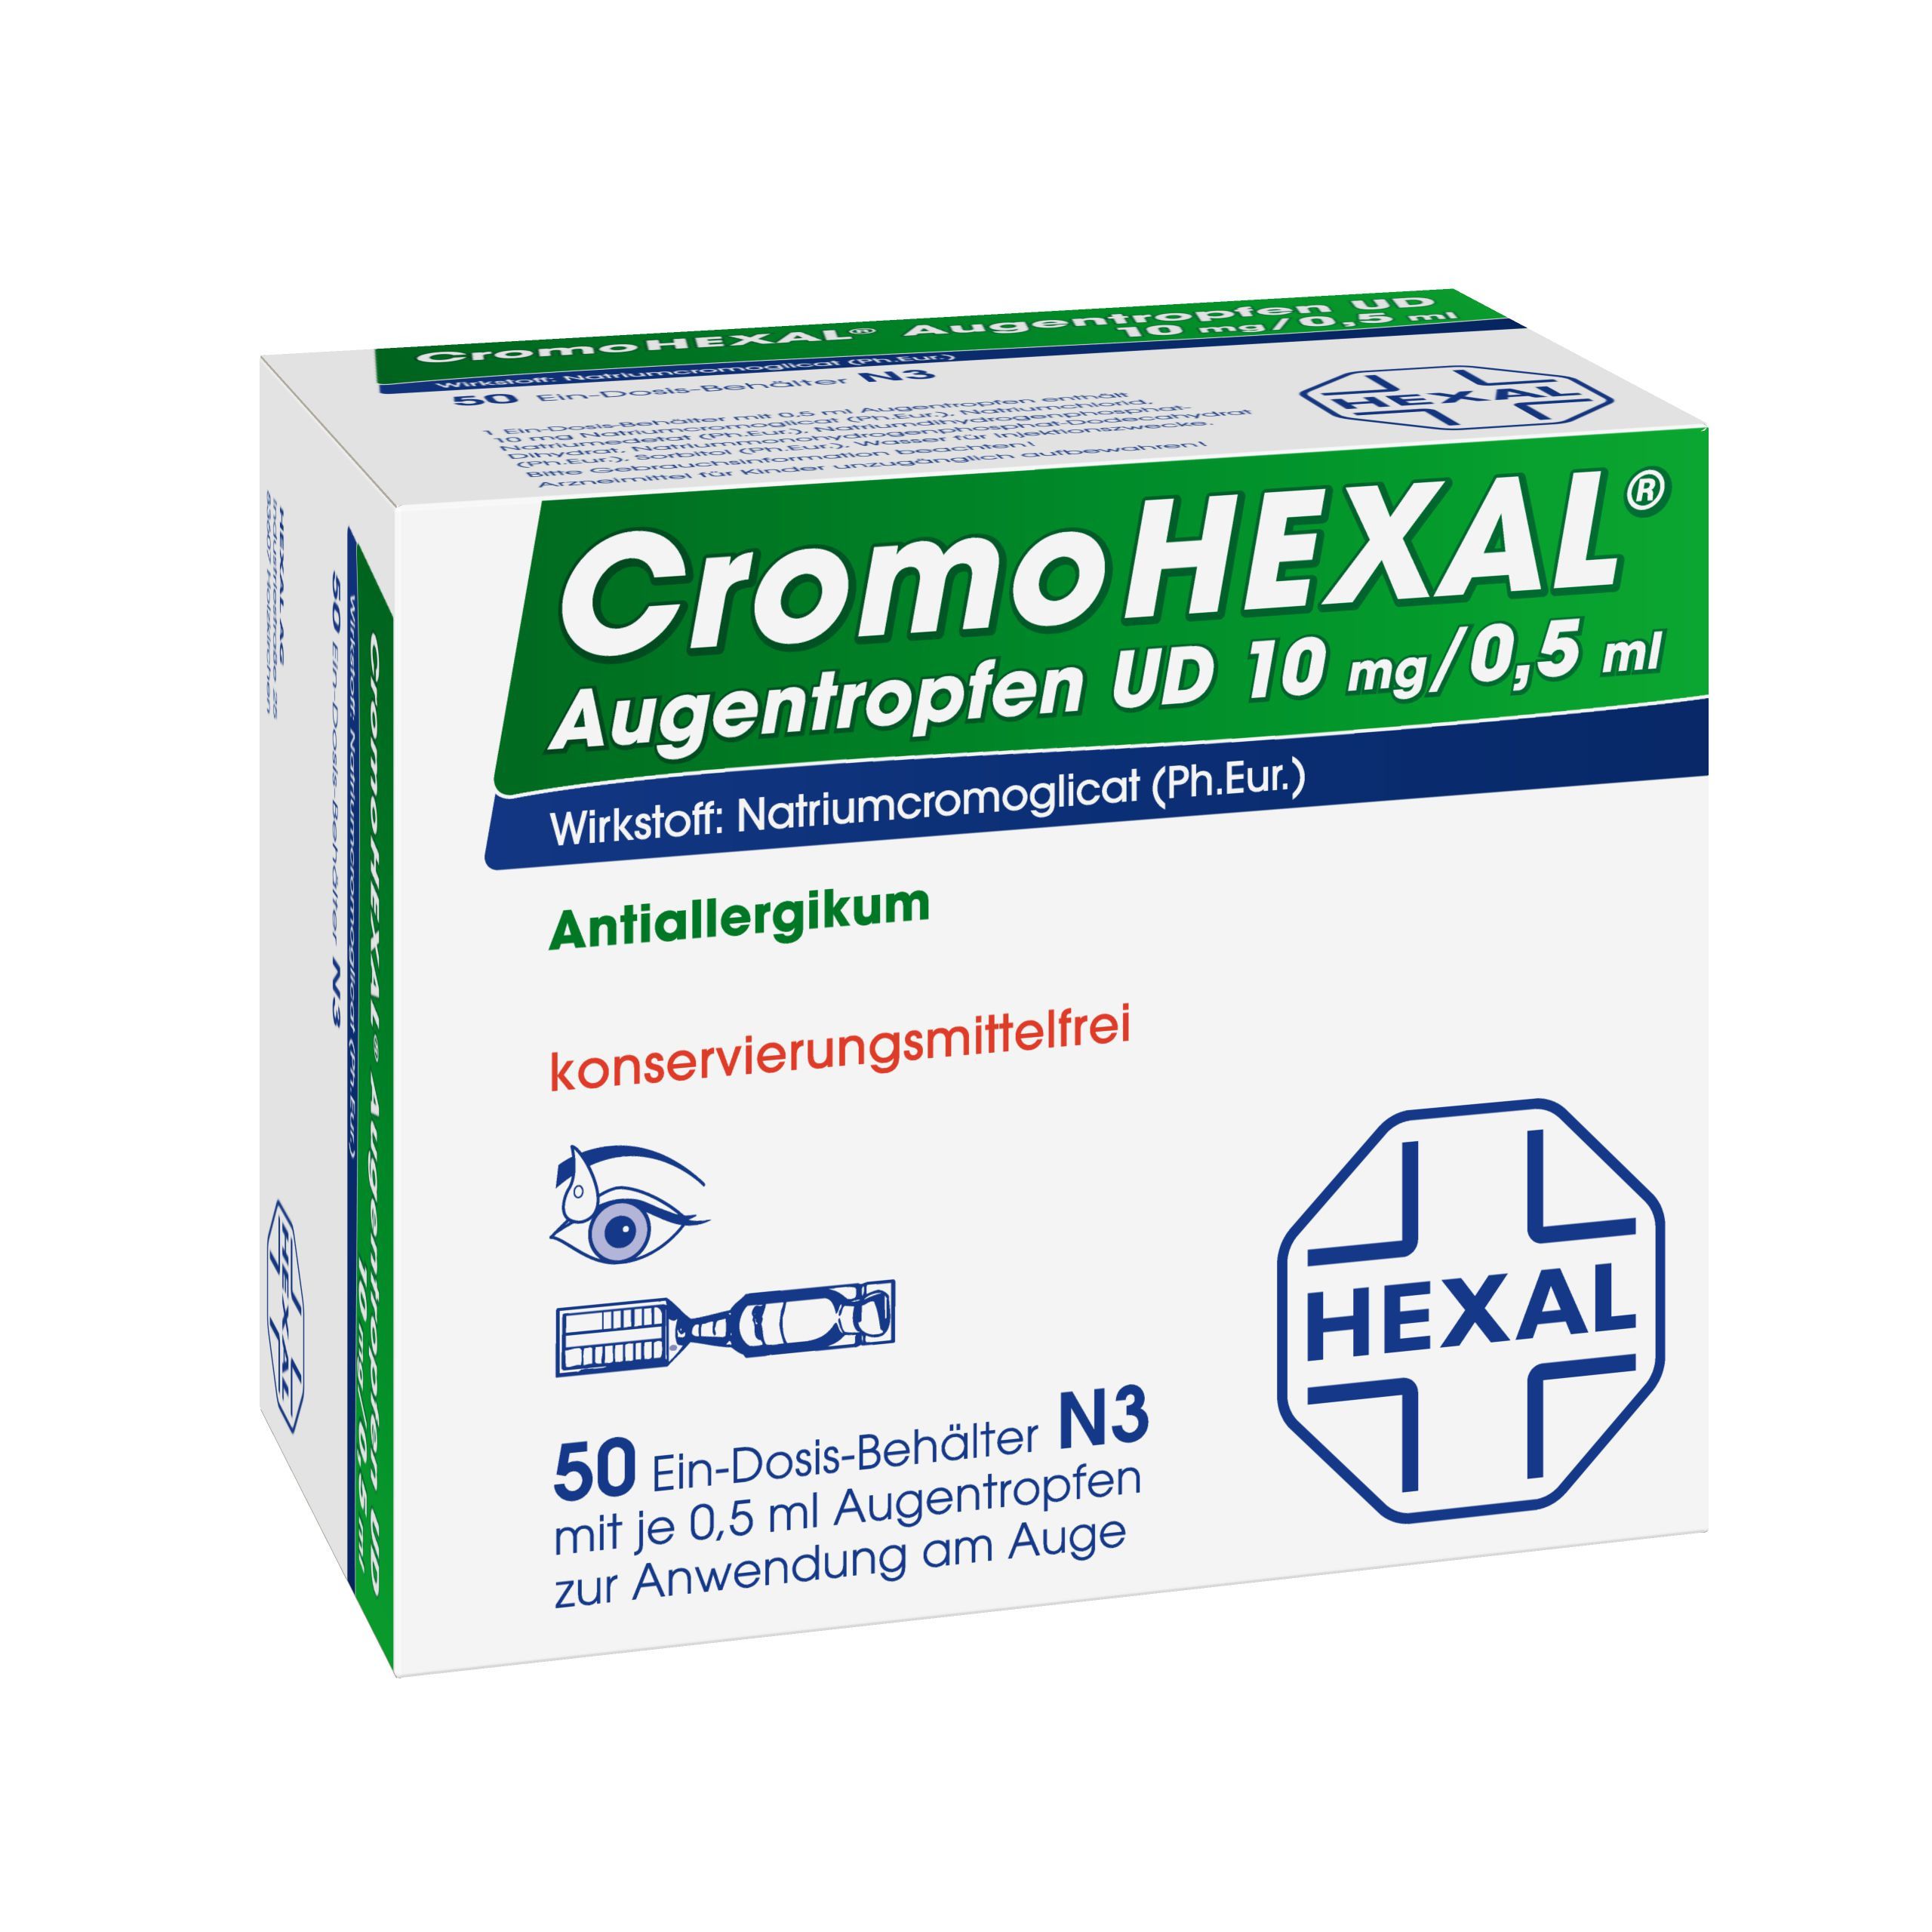 CromoHEXAL® Augentropfen UD 10 mg/0,5 ml